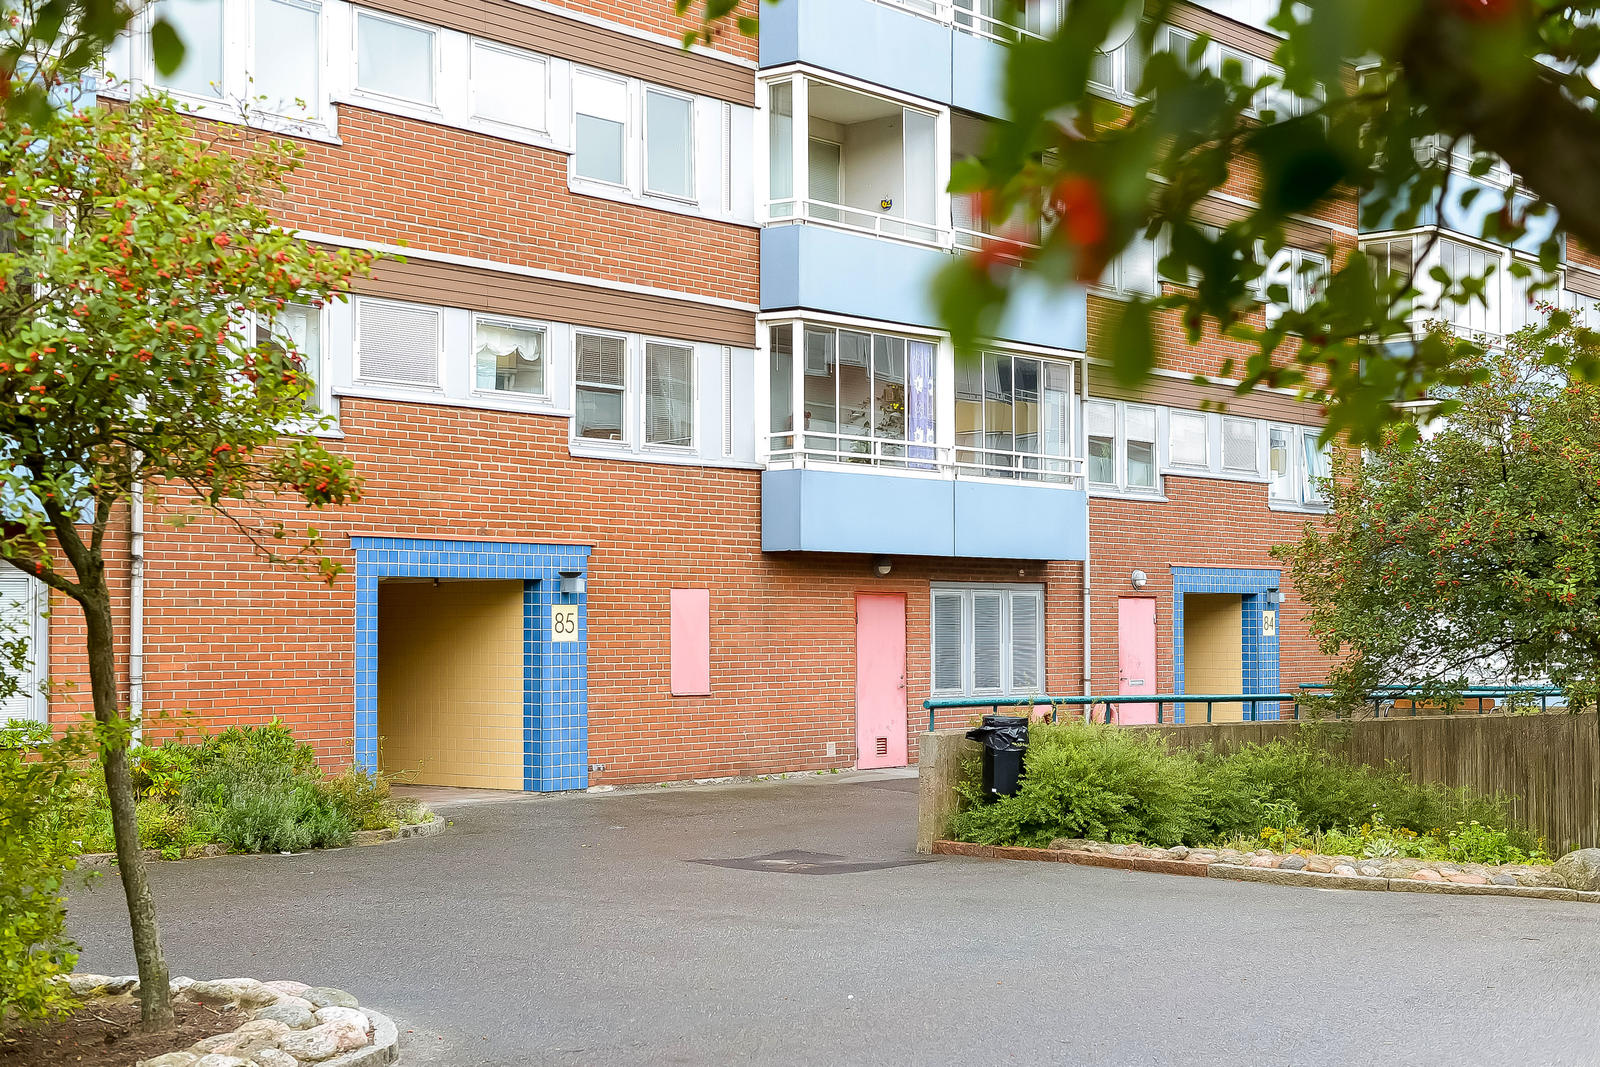 Bostadsrätt i Ängås, Västra Frölunda, Sverige, Topasgatan 85